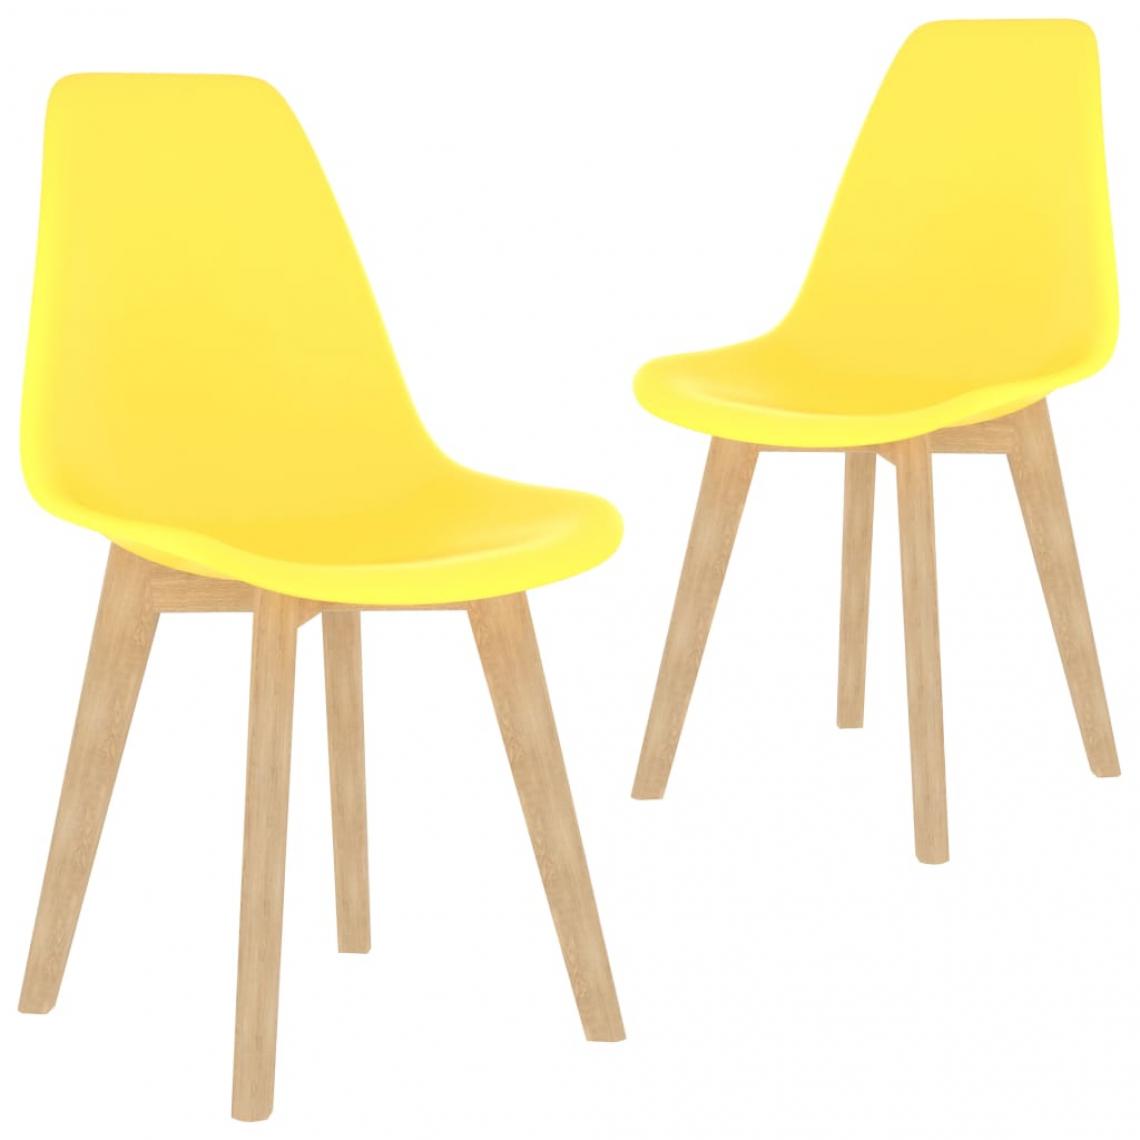 Decoshop26 - Lot de 2 chaises de salle à manger cuisine design contemporain plastique jaune CDS020633 - Chaises